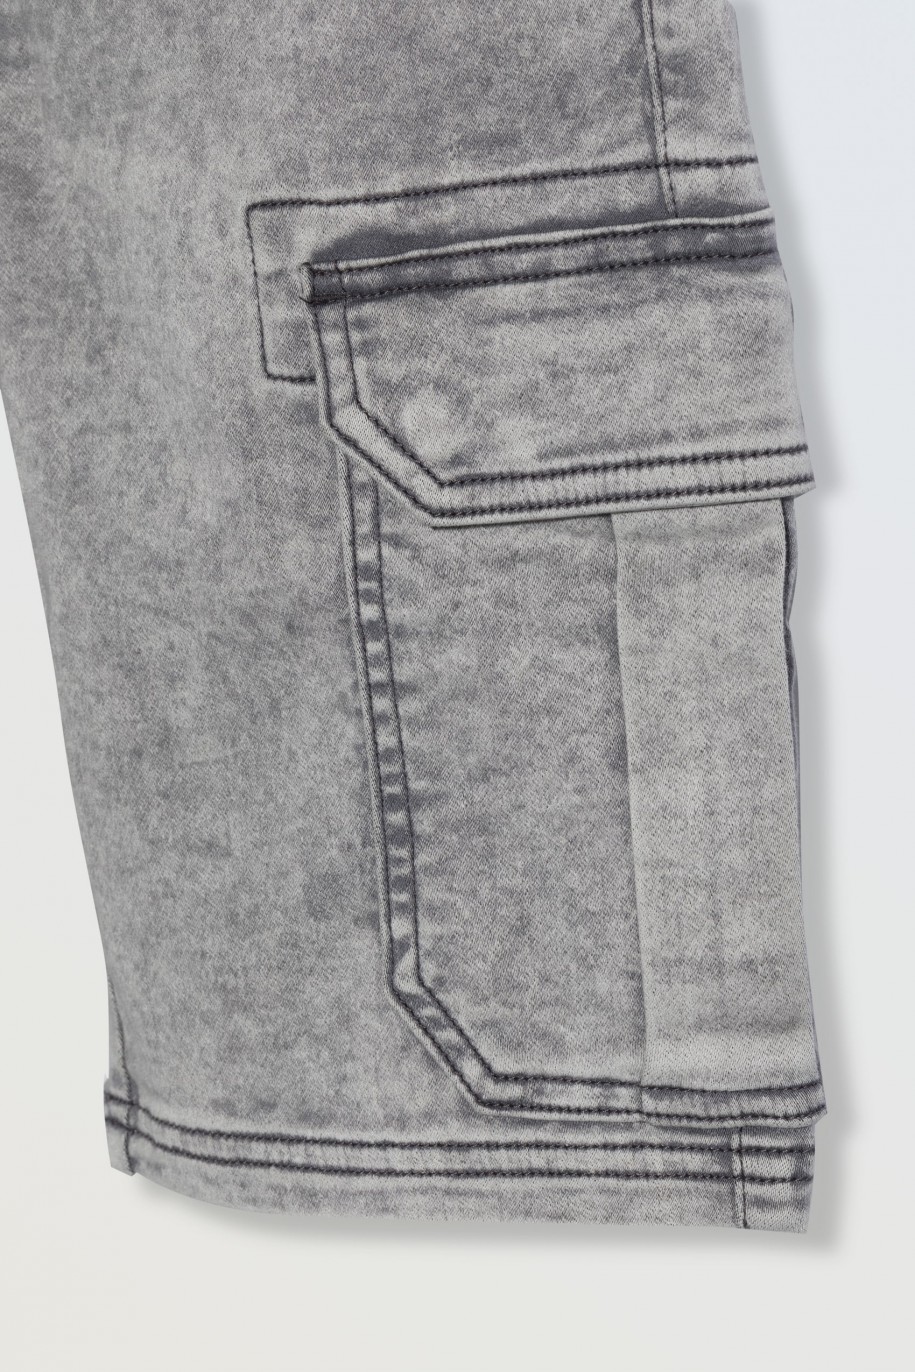 Szare krótkie spodenki jeansowe z przestrzennymi kieszeniami - 46785